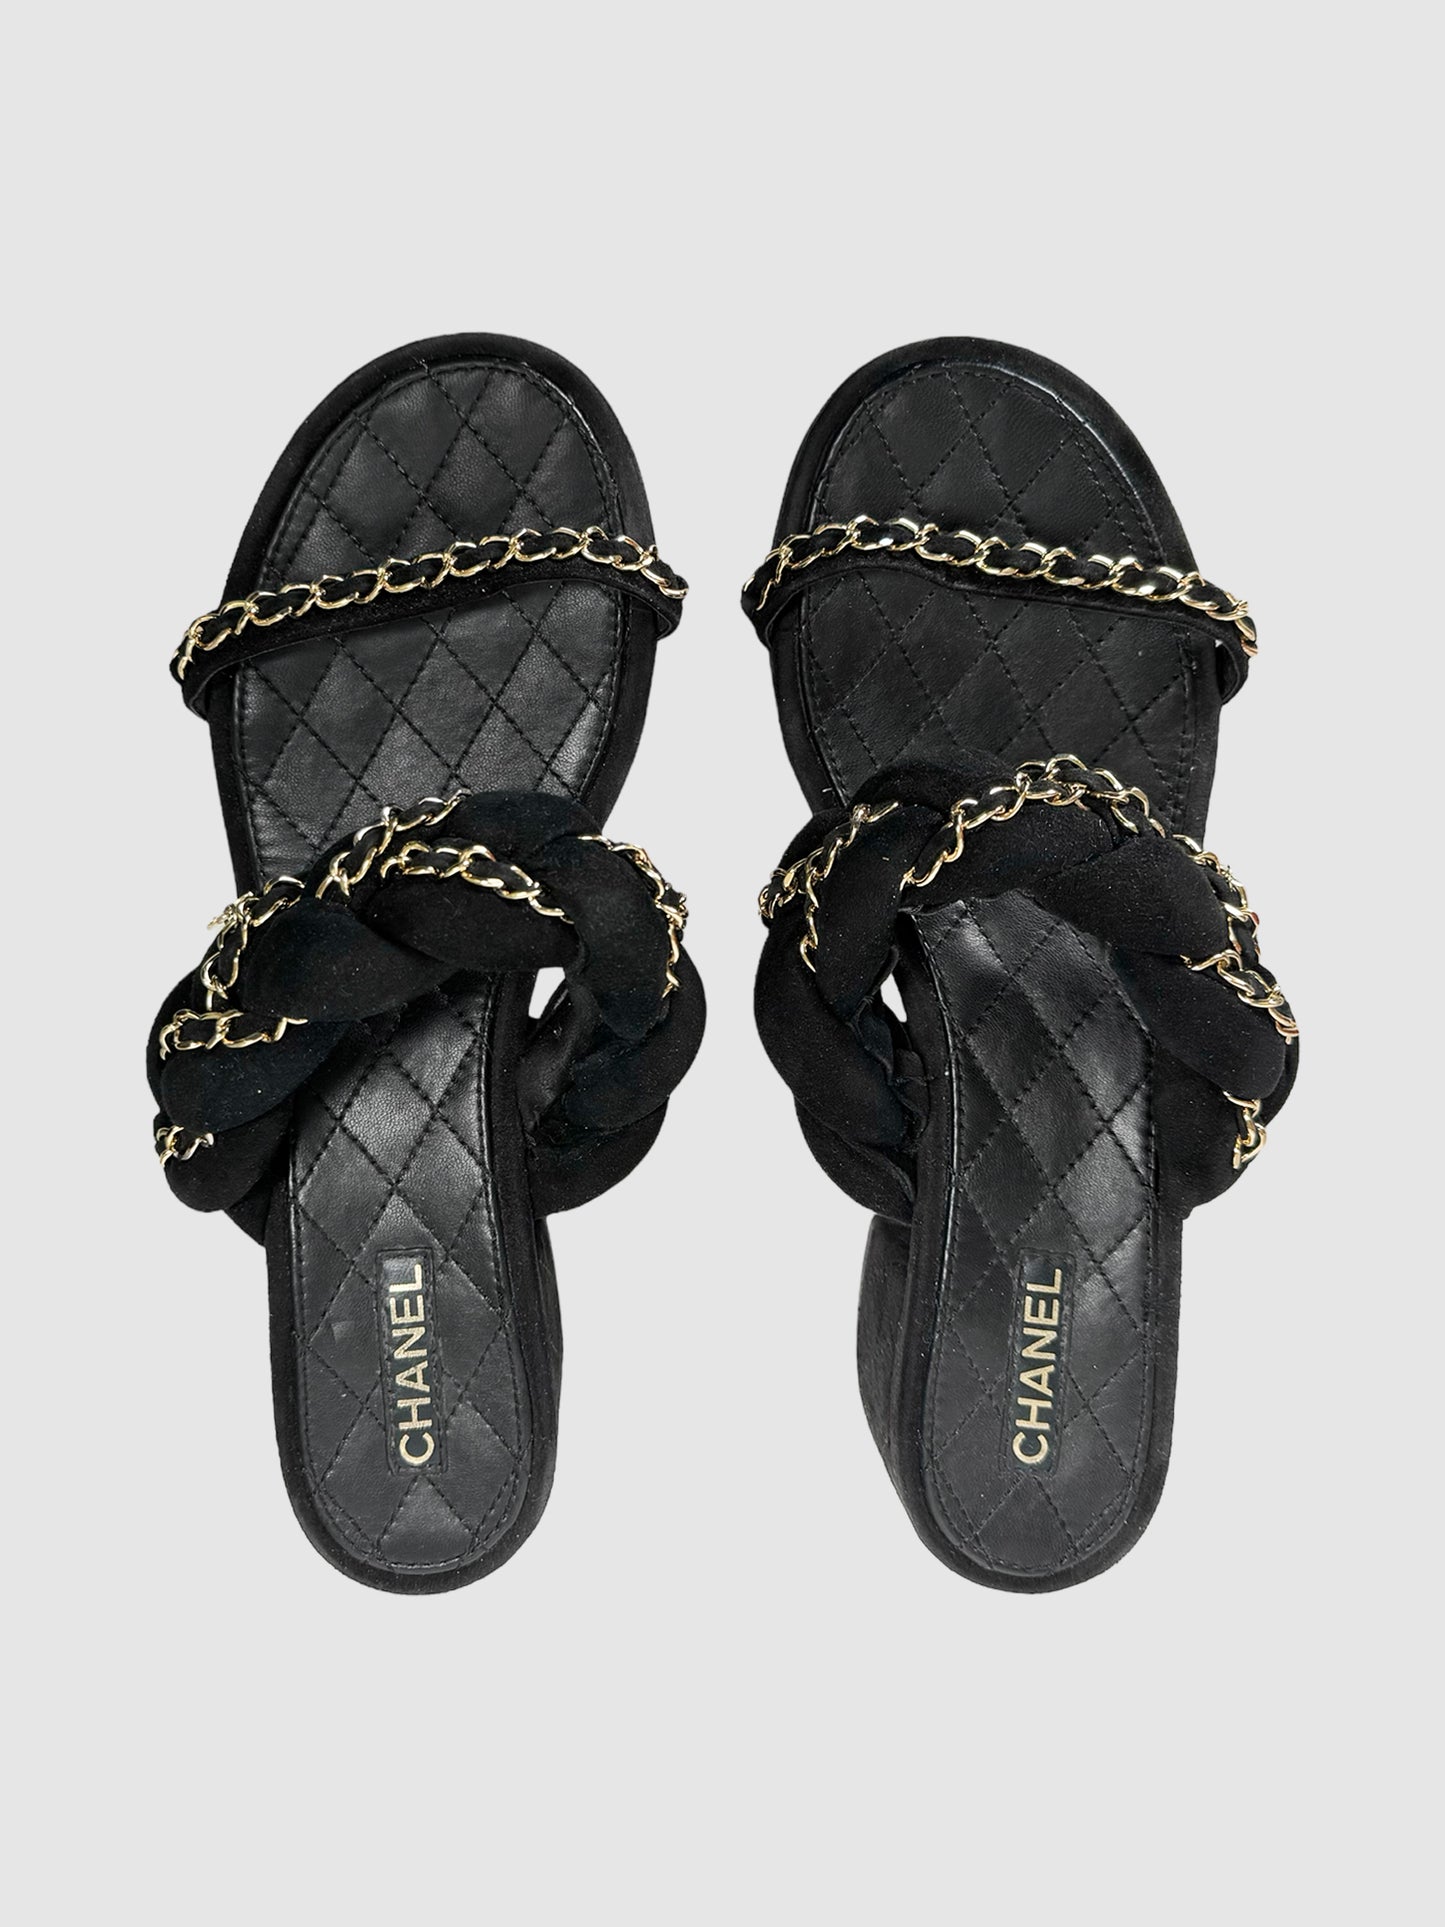 2017 Interlocking CC Sandals - Size 40